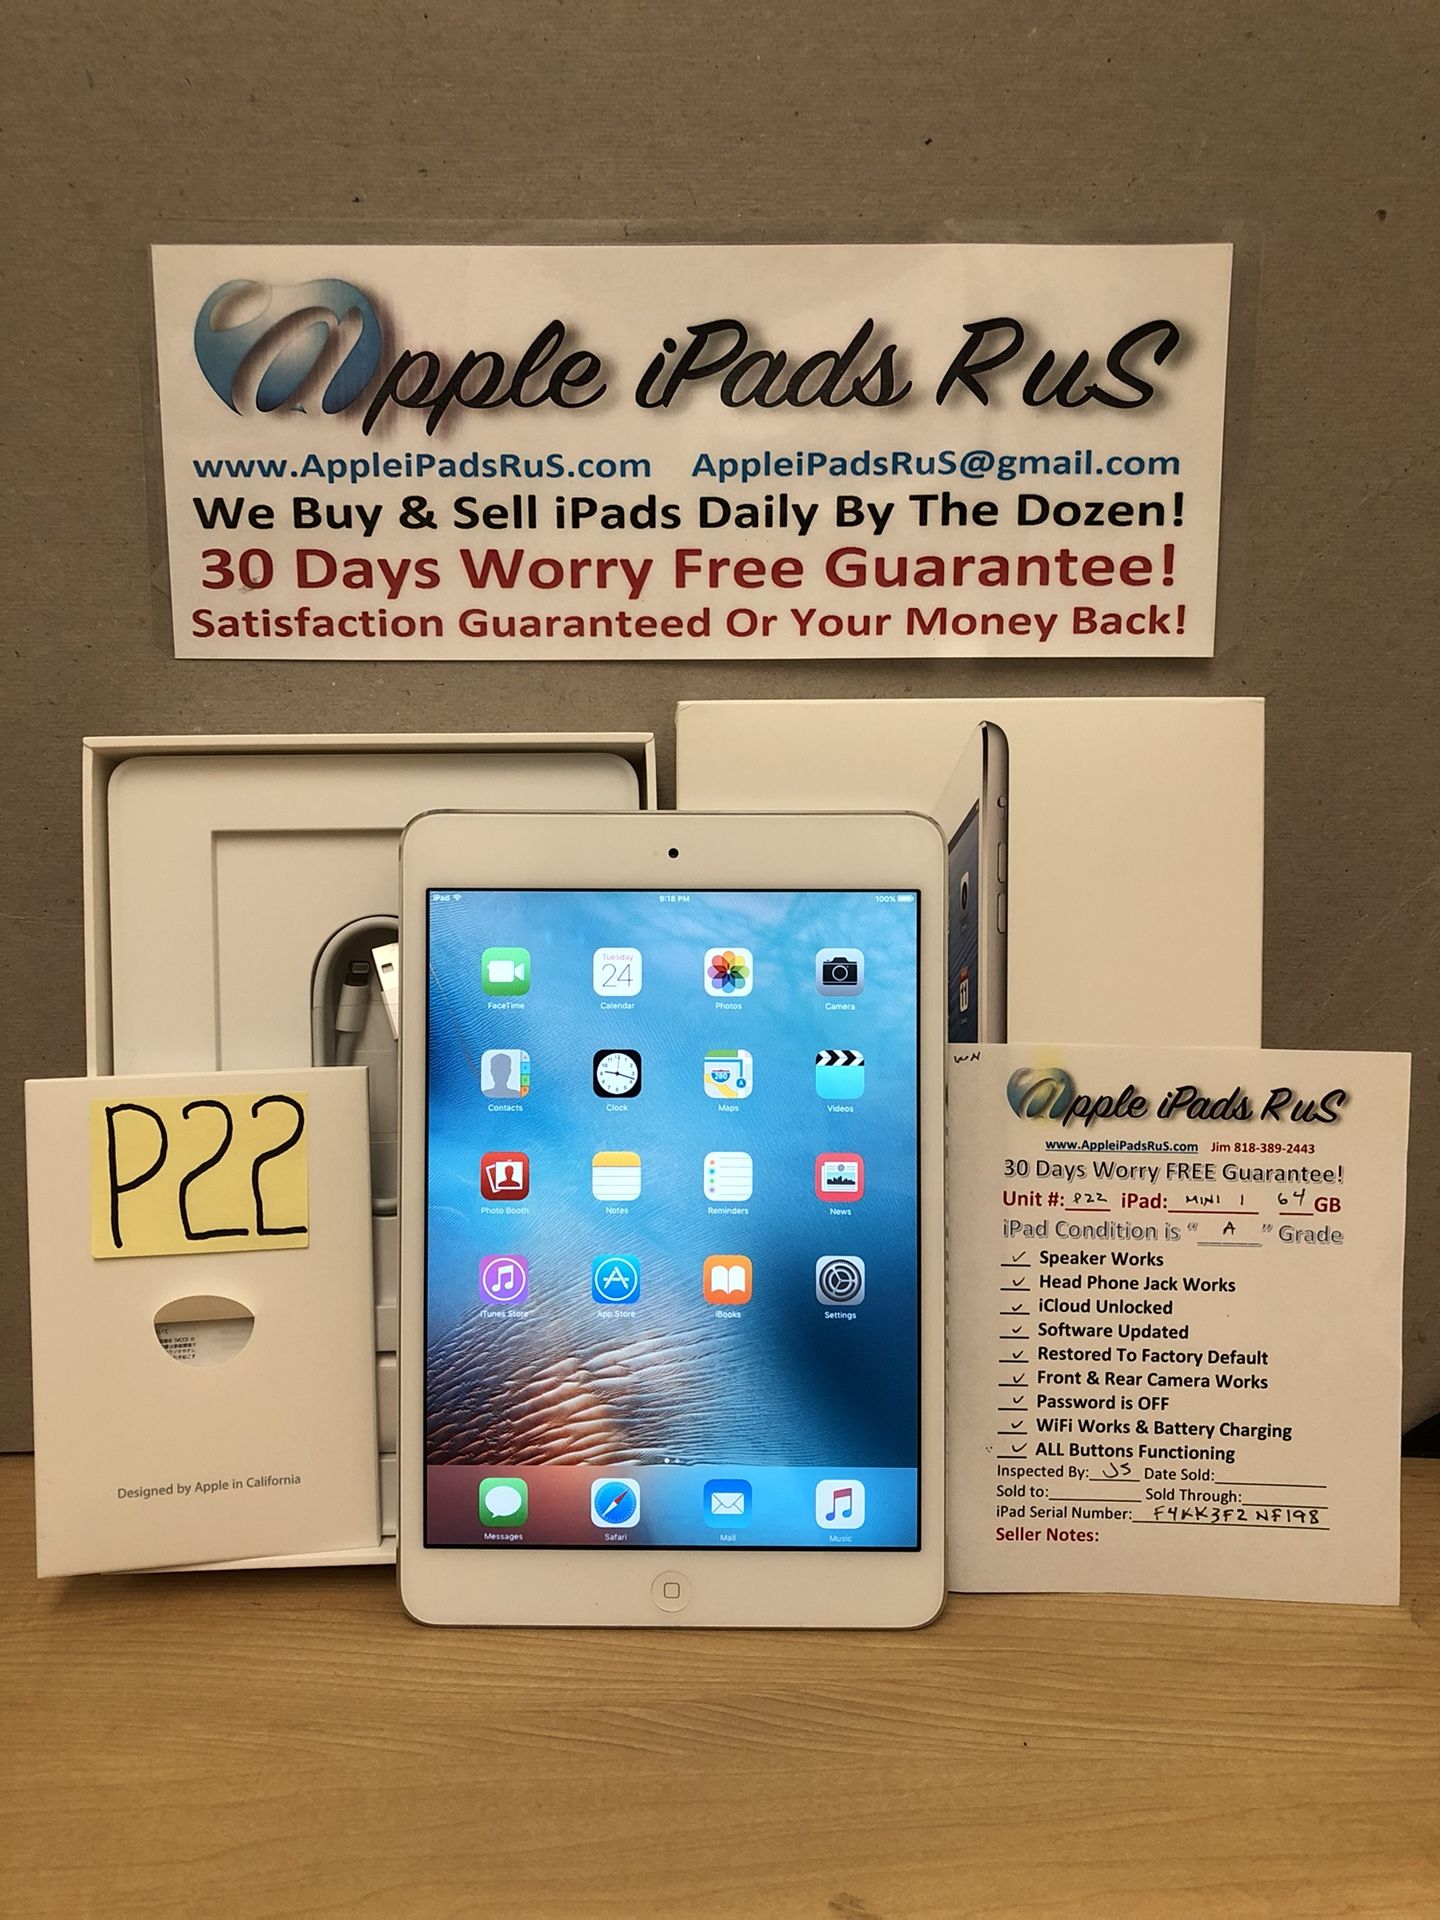 P22 - iPad mini 1 64GB